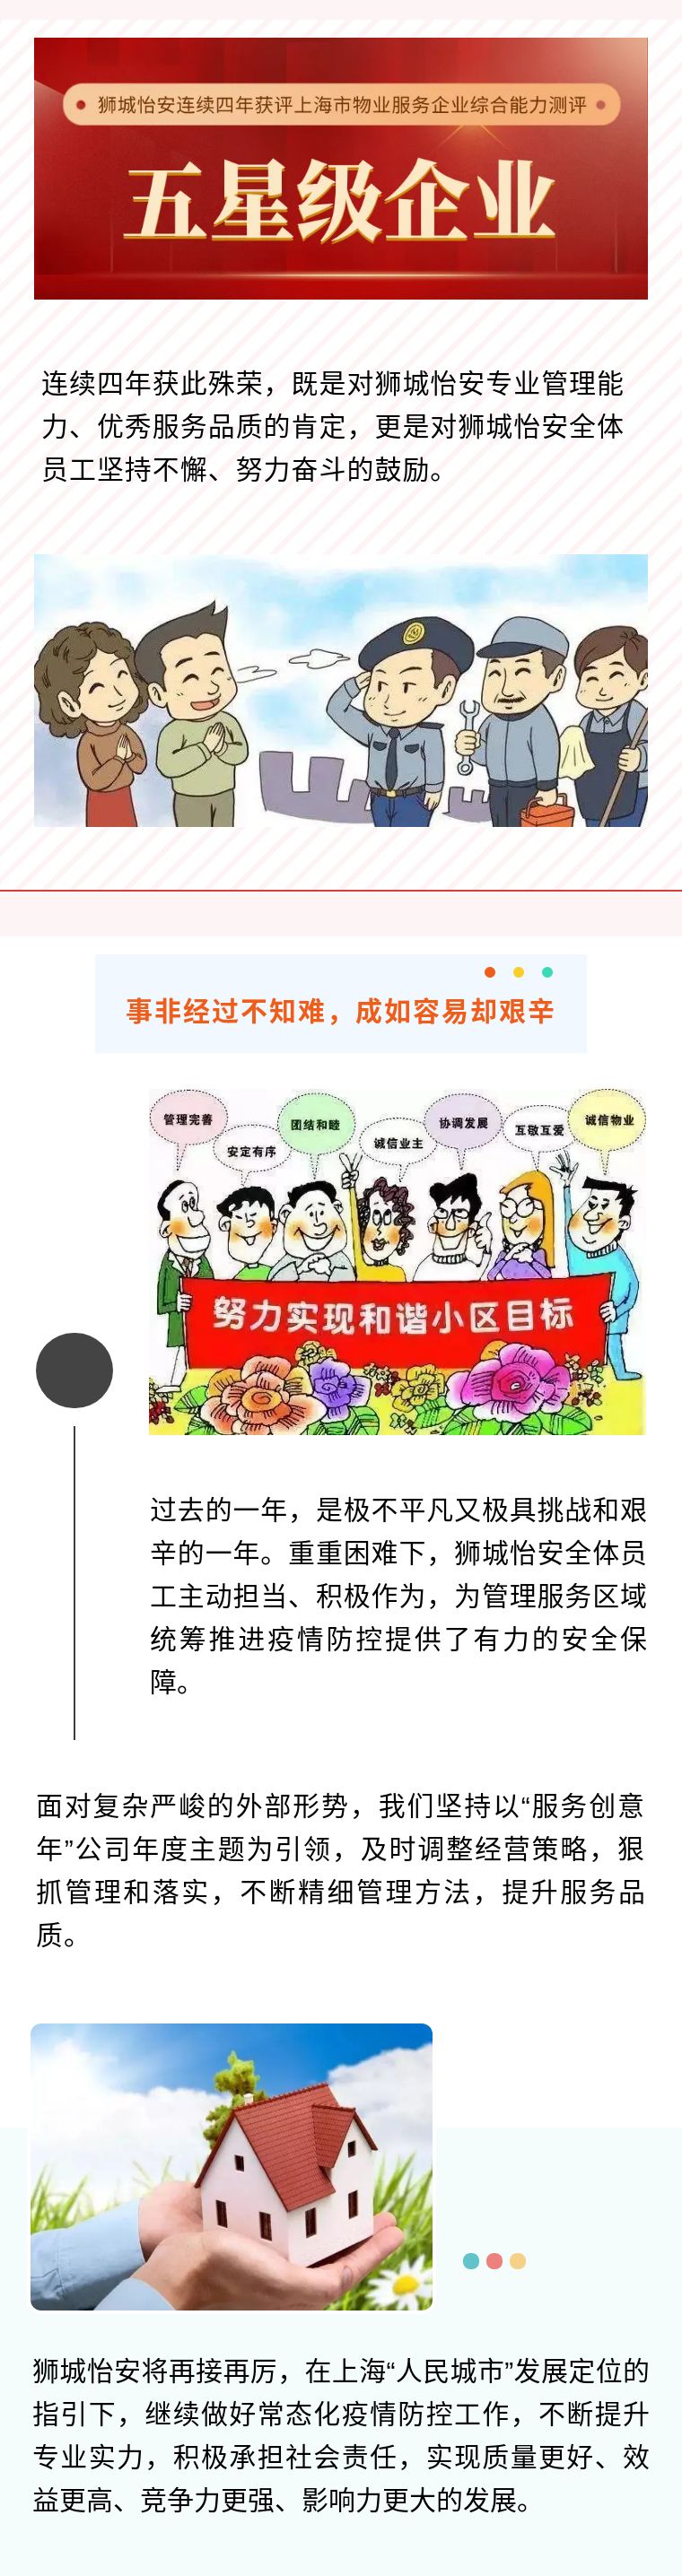 狮城怡安连续第四年获评“上海市物业服务企业综合能力五星级企业”